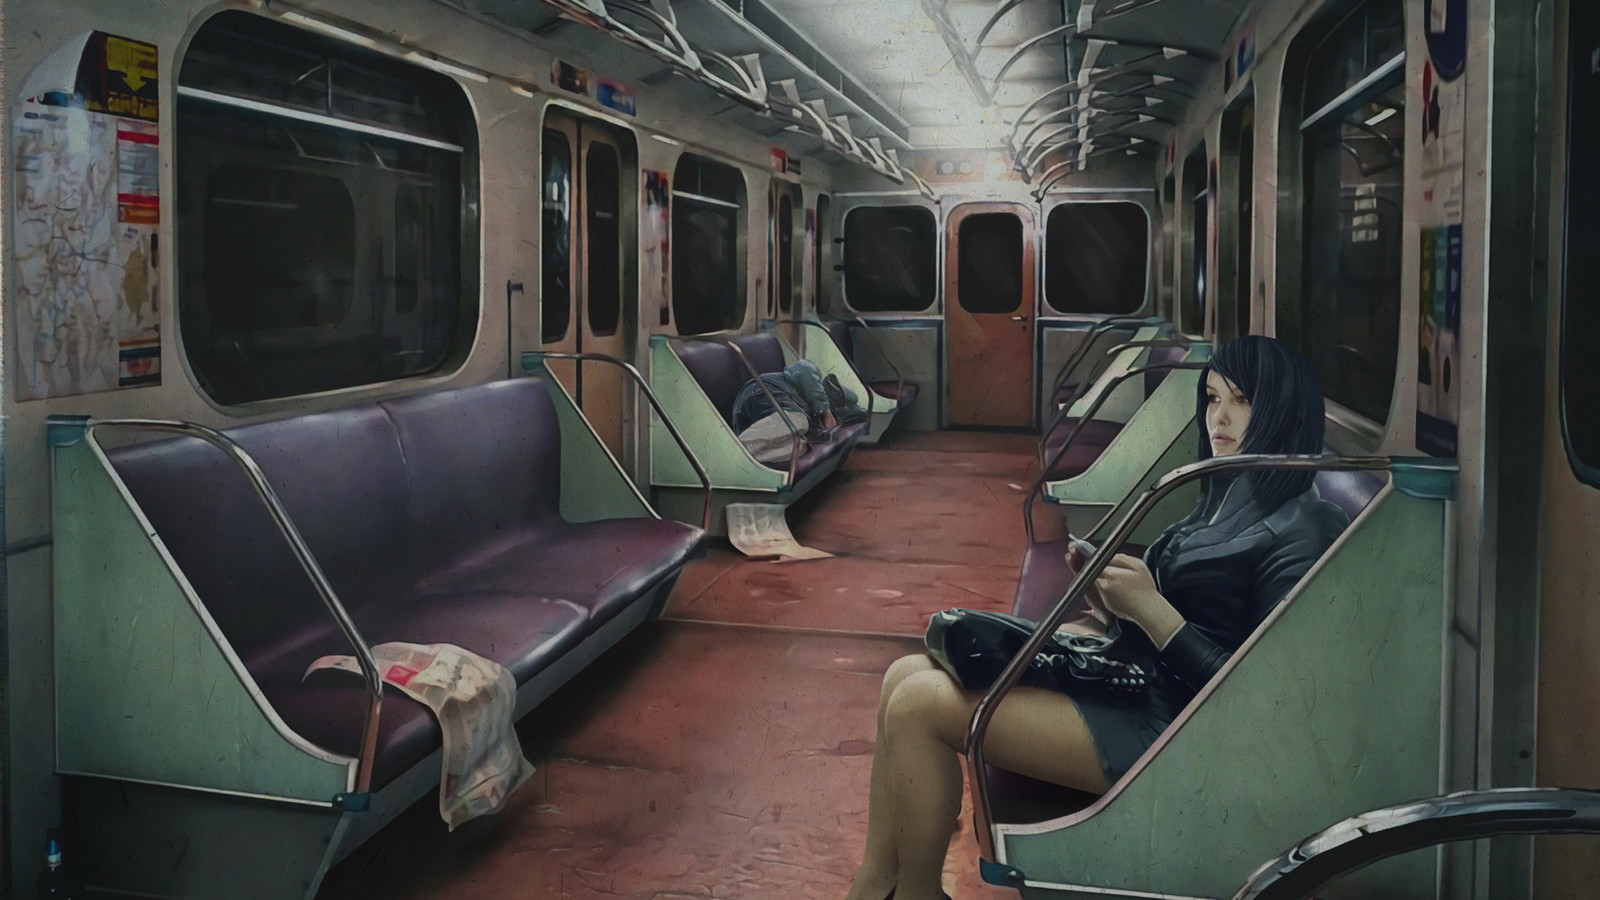 Scene 3 - Train interior